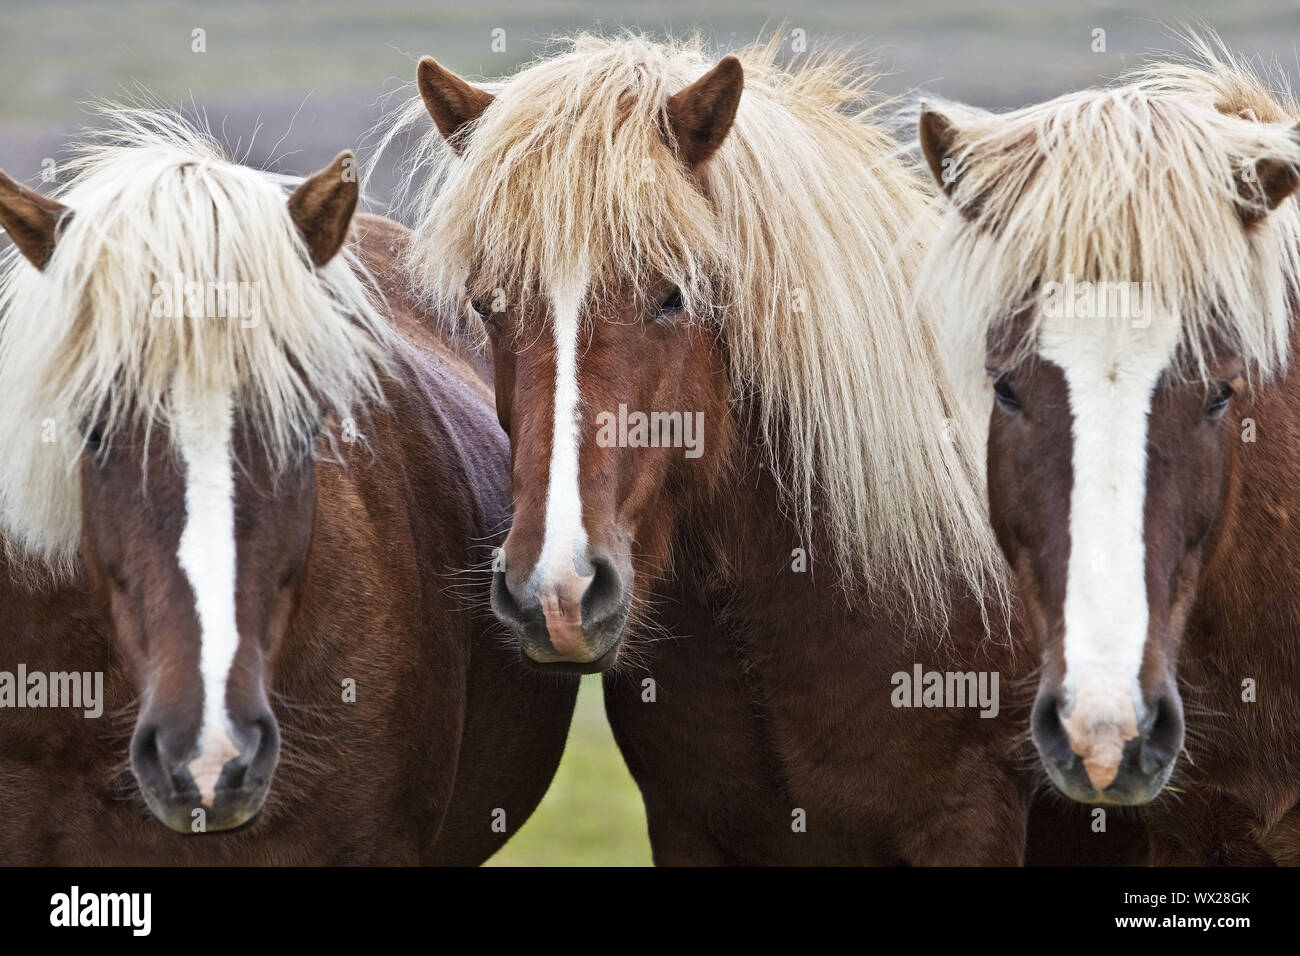 Islandic horse (Equus ferus caballus), three Icelandic horses standing togeher, portrait, Iceland Stock Photo